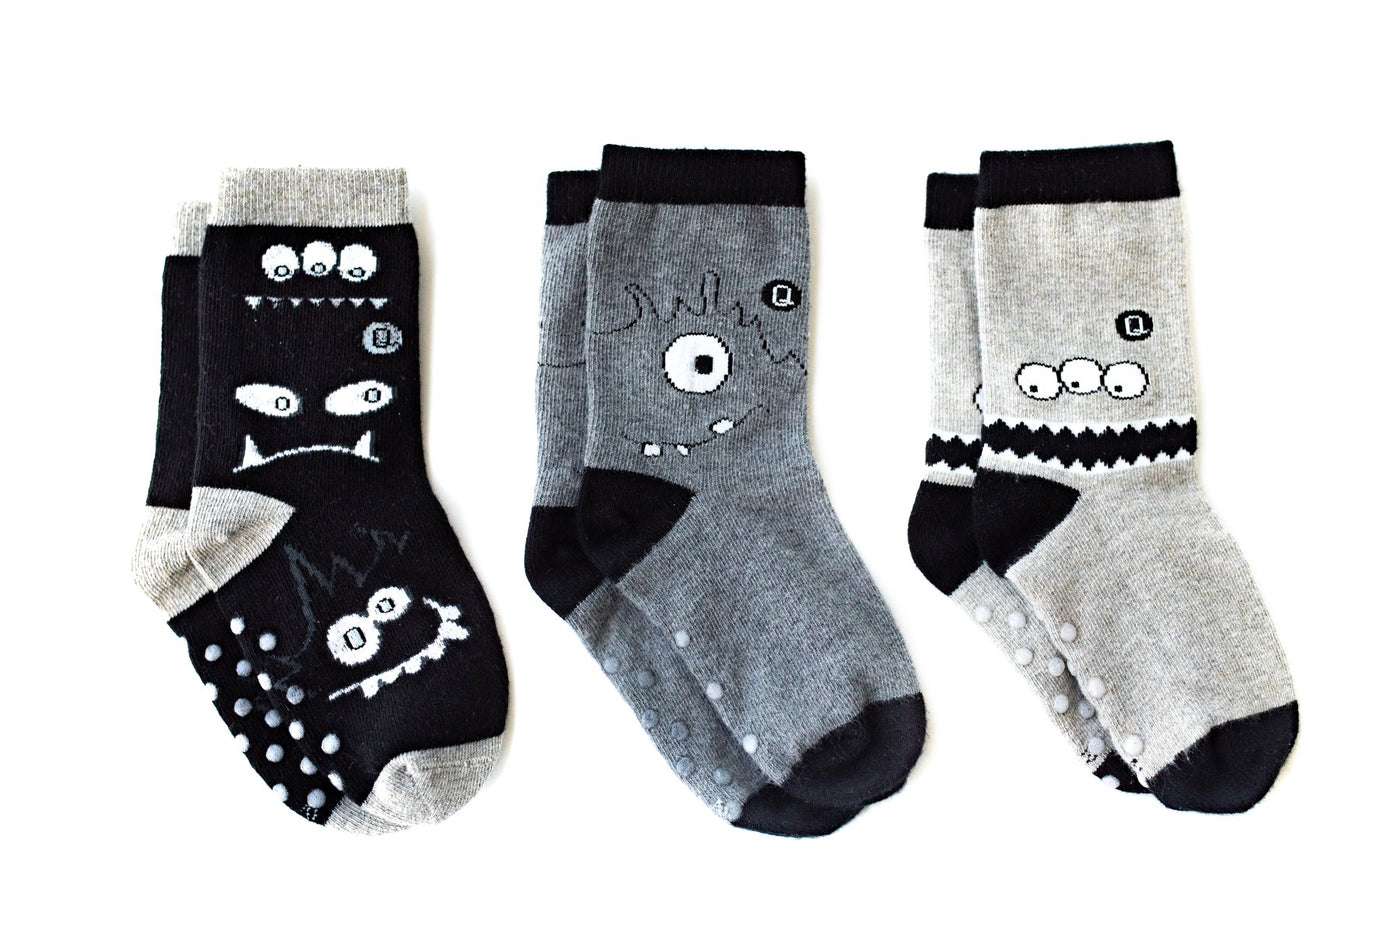 Q for Quinn "Monochrome Monsters" Toddler Socks (3 pairs)